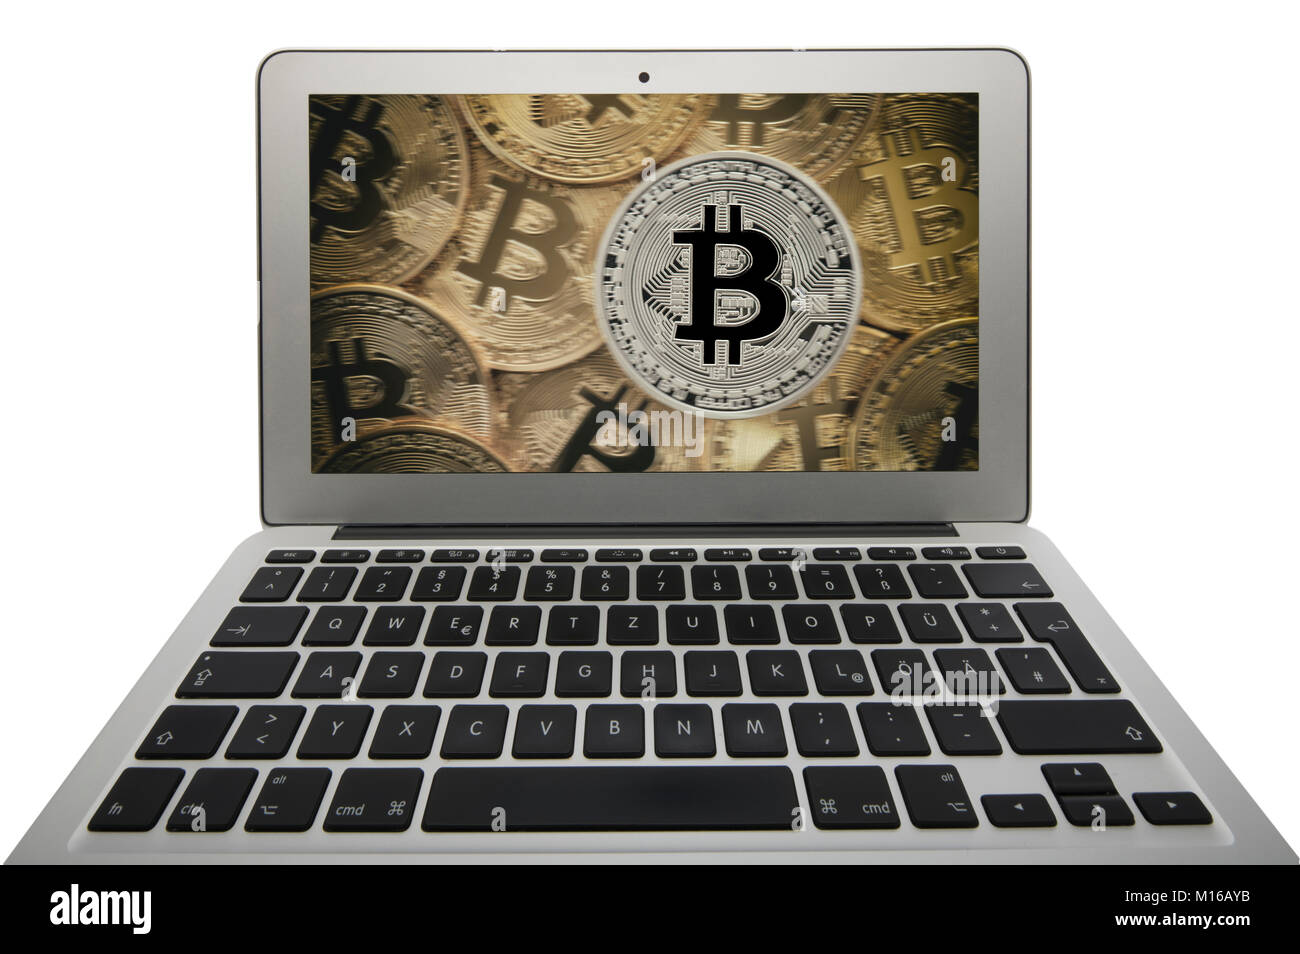 Image symbole de la turbulence, la volatilité, de l'action de la monnaie numérique, de l'or monnaie physique portable bitcoin Banque D'Images